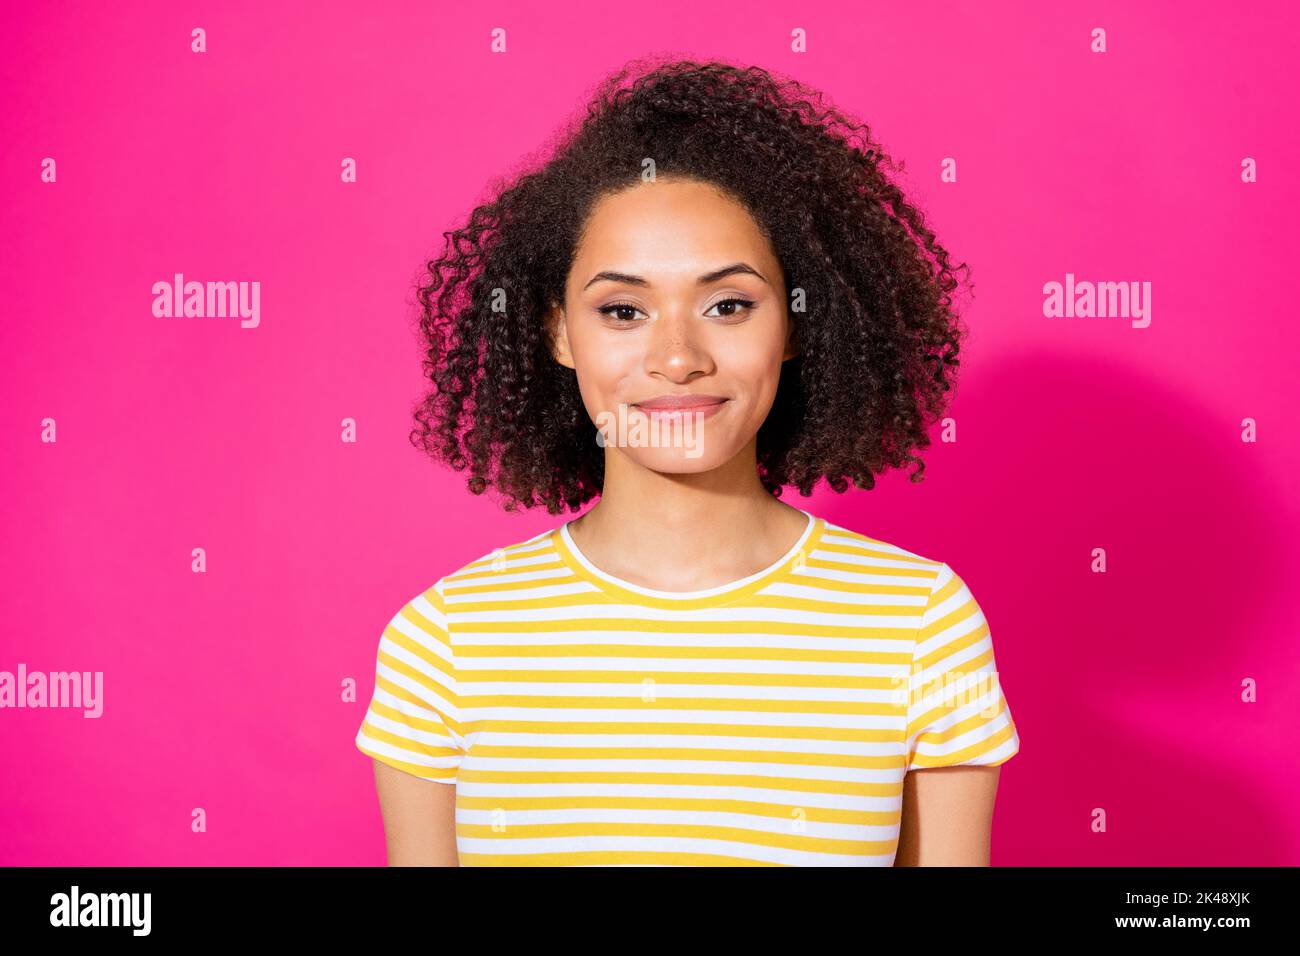 Potrait Foto von jungen positiven attraktive Mädchen tragen gestreiften gelben T-Shirt zuversichtlich Lächeln aussehen Sie isoliert auf rosa Hintergrund Stockfoto